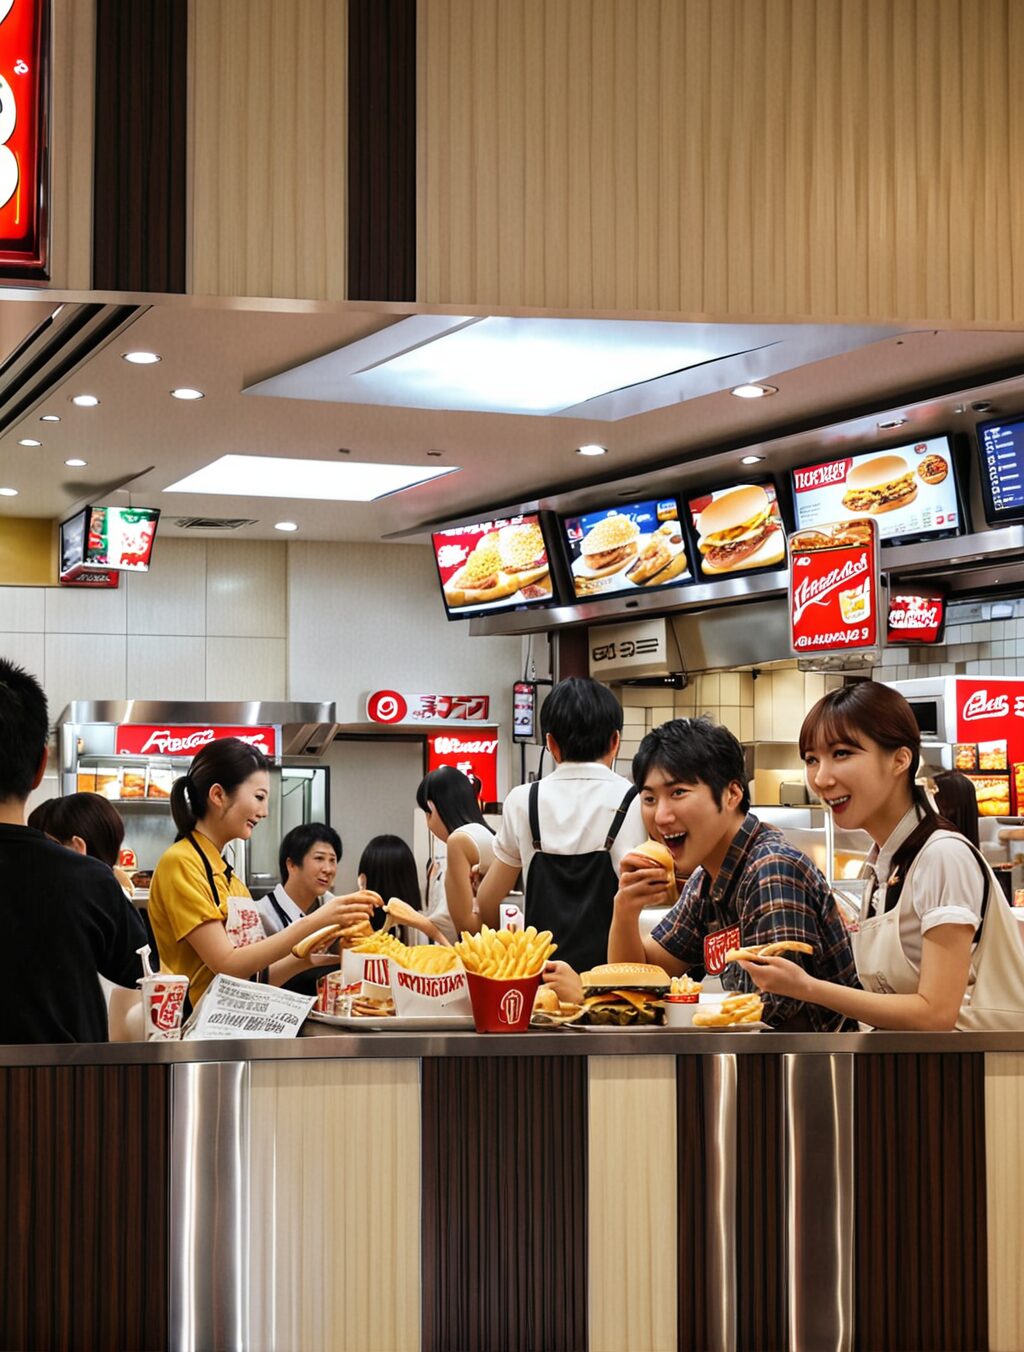 is american fast food popular in japan